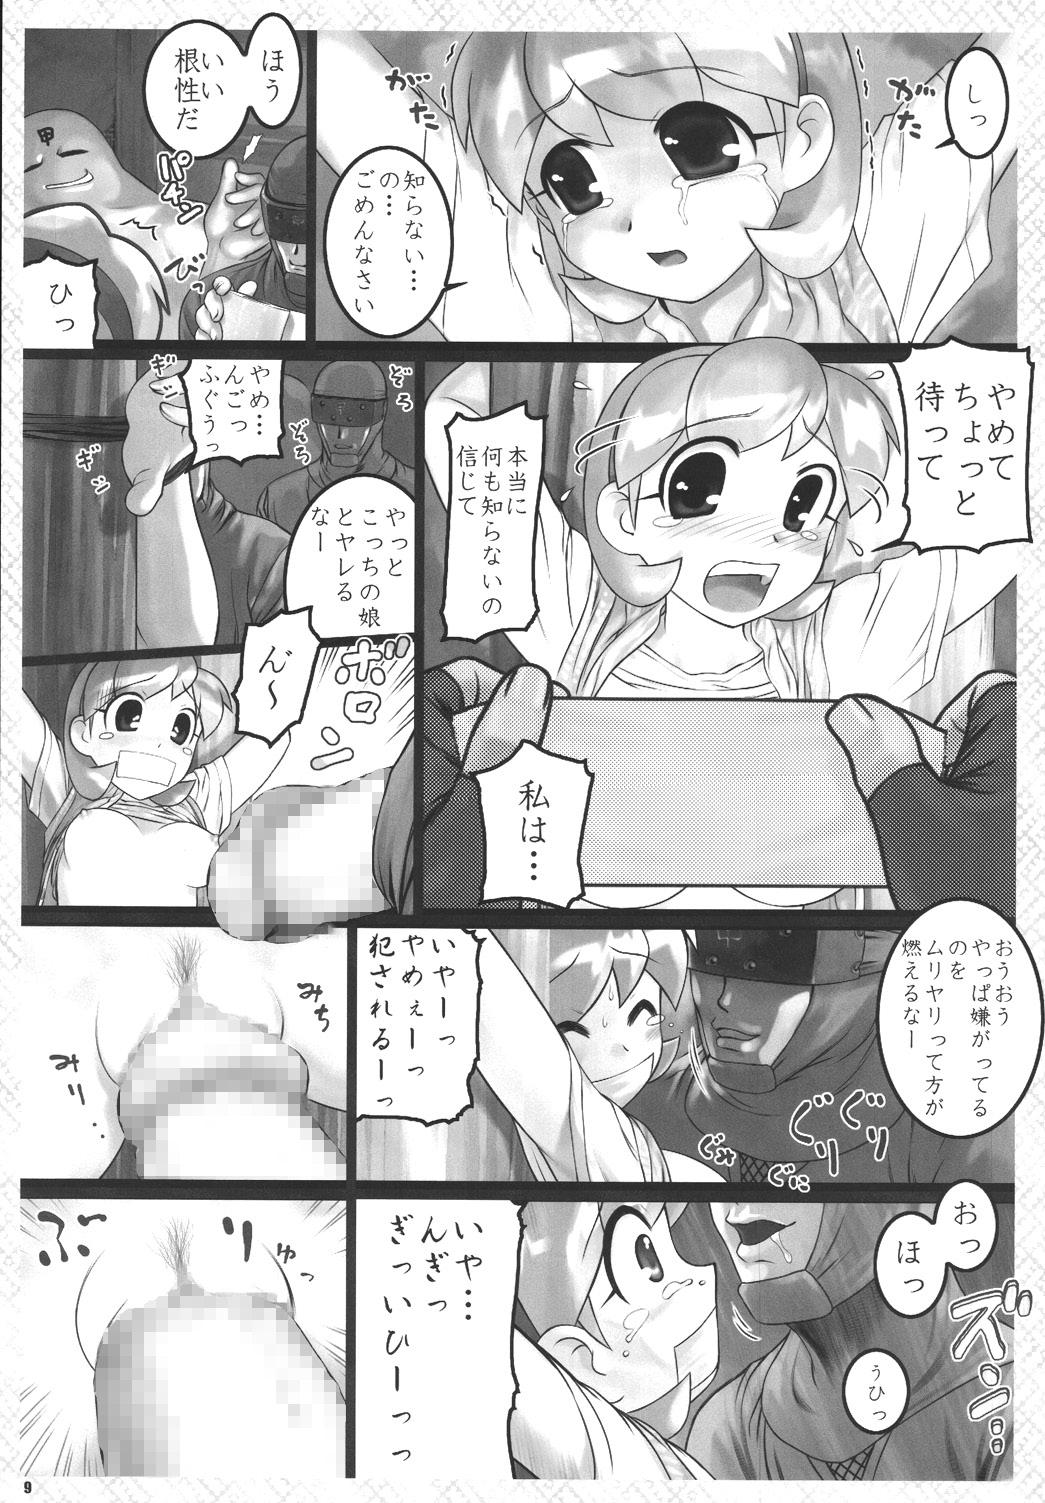 Bigdick Kunoichi Ninpouchou - 2x2 shinobuden Beauty - Page 9